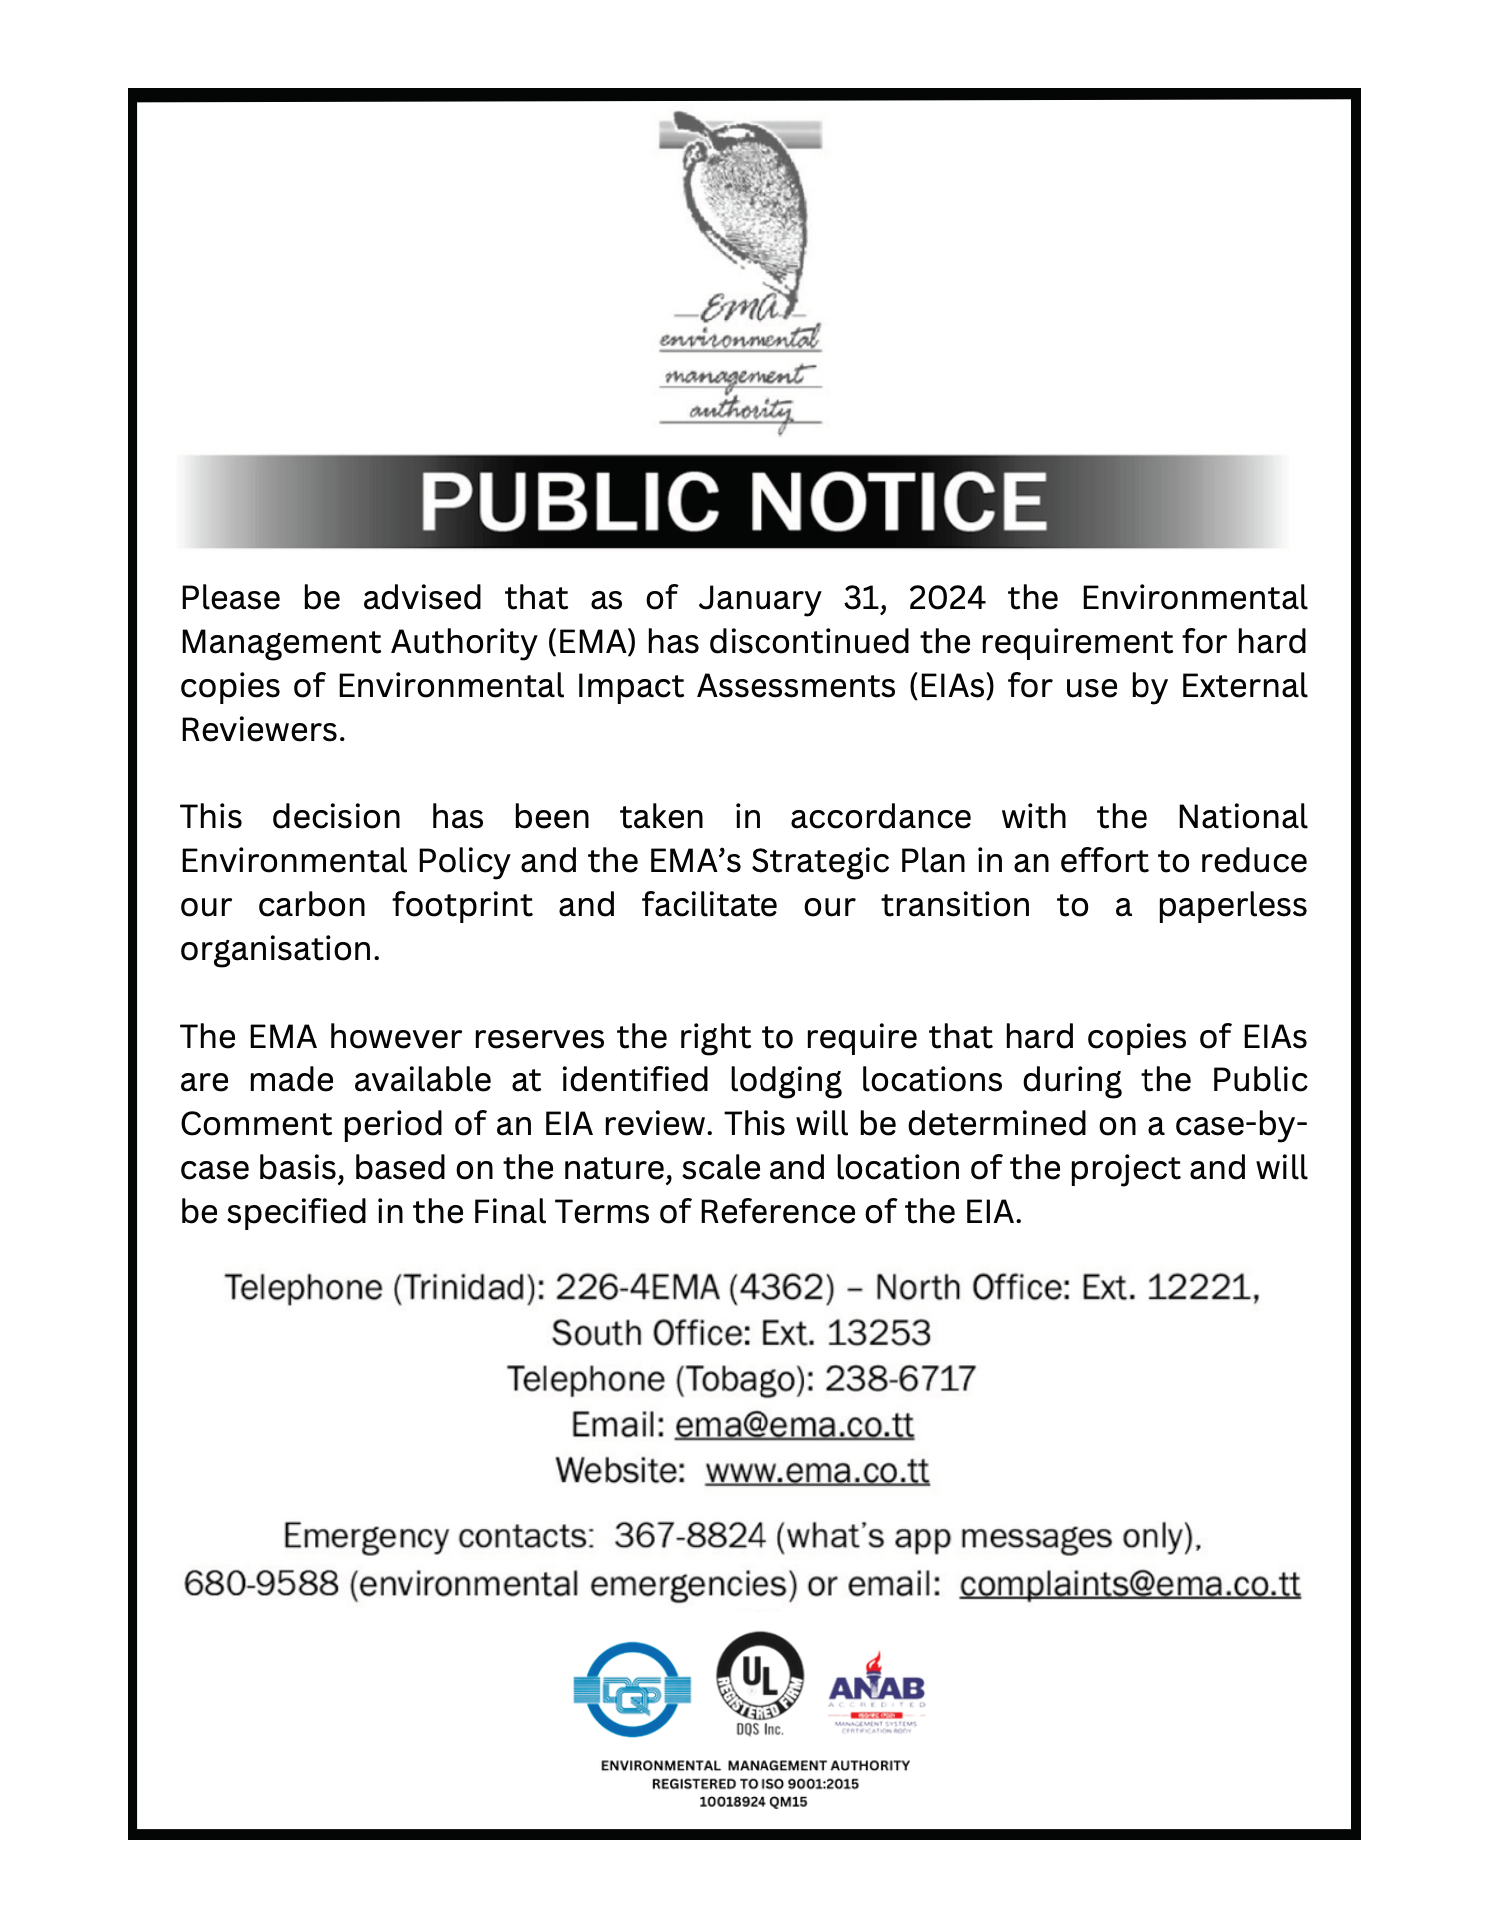 Public Notice EIA